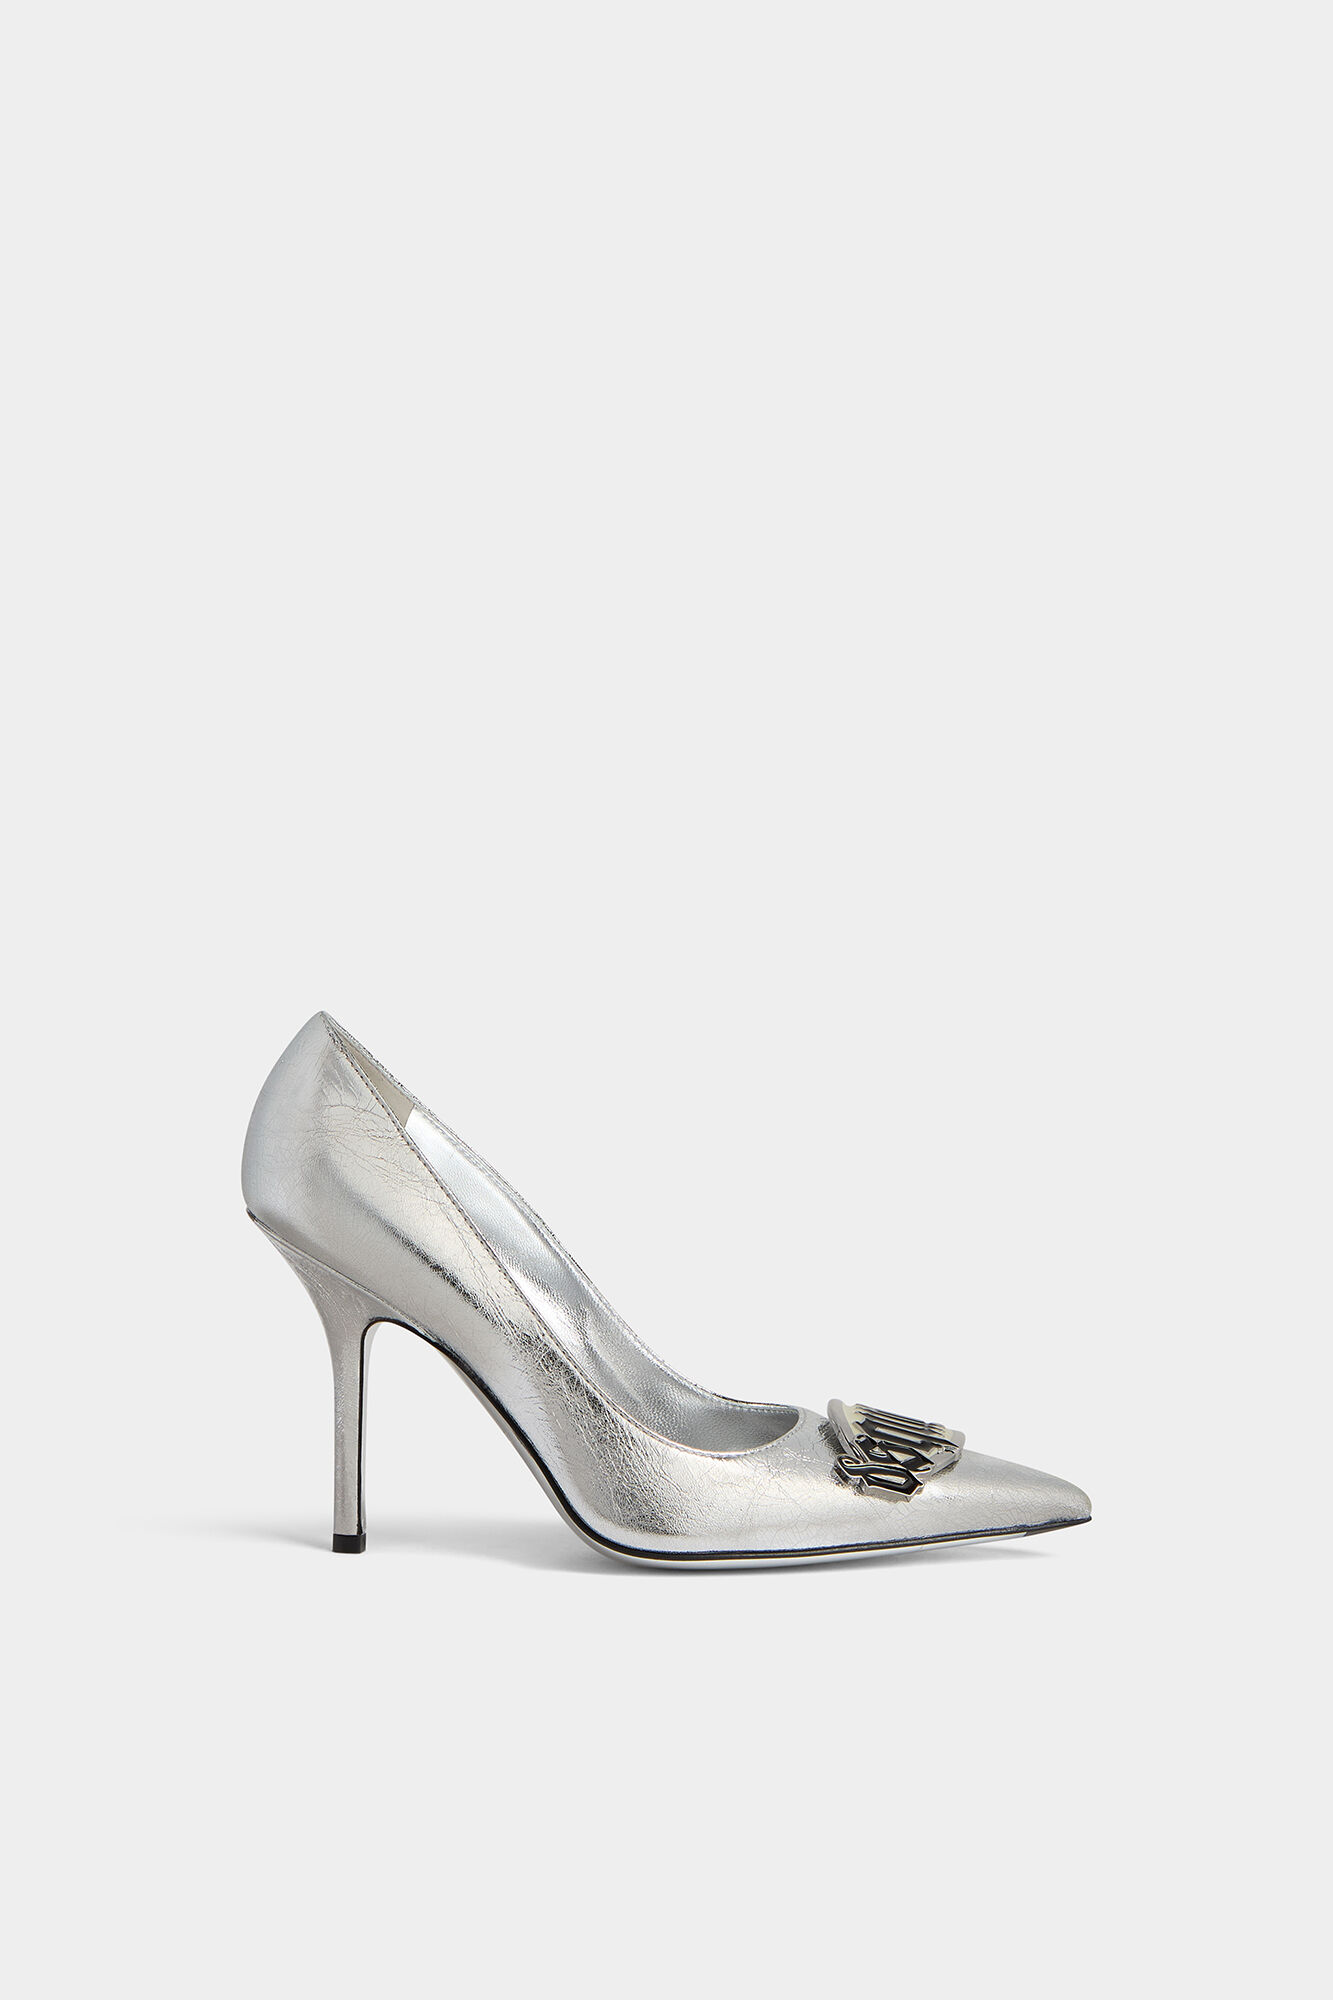 Dsquared2 Women's Heels for sale | eBay